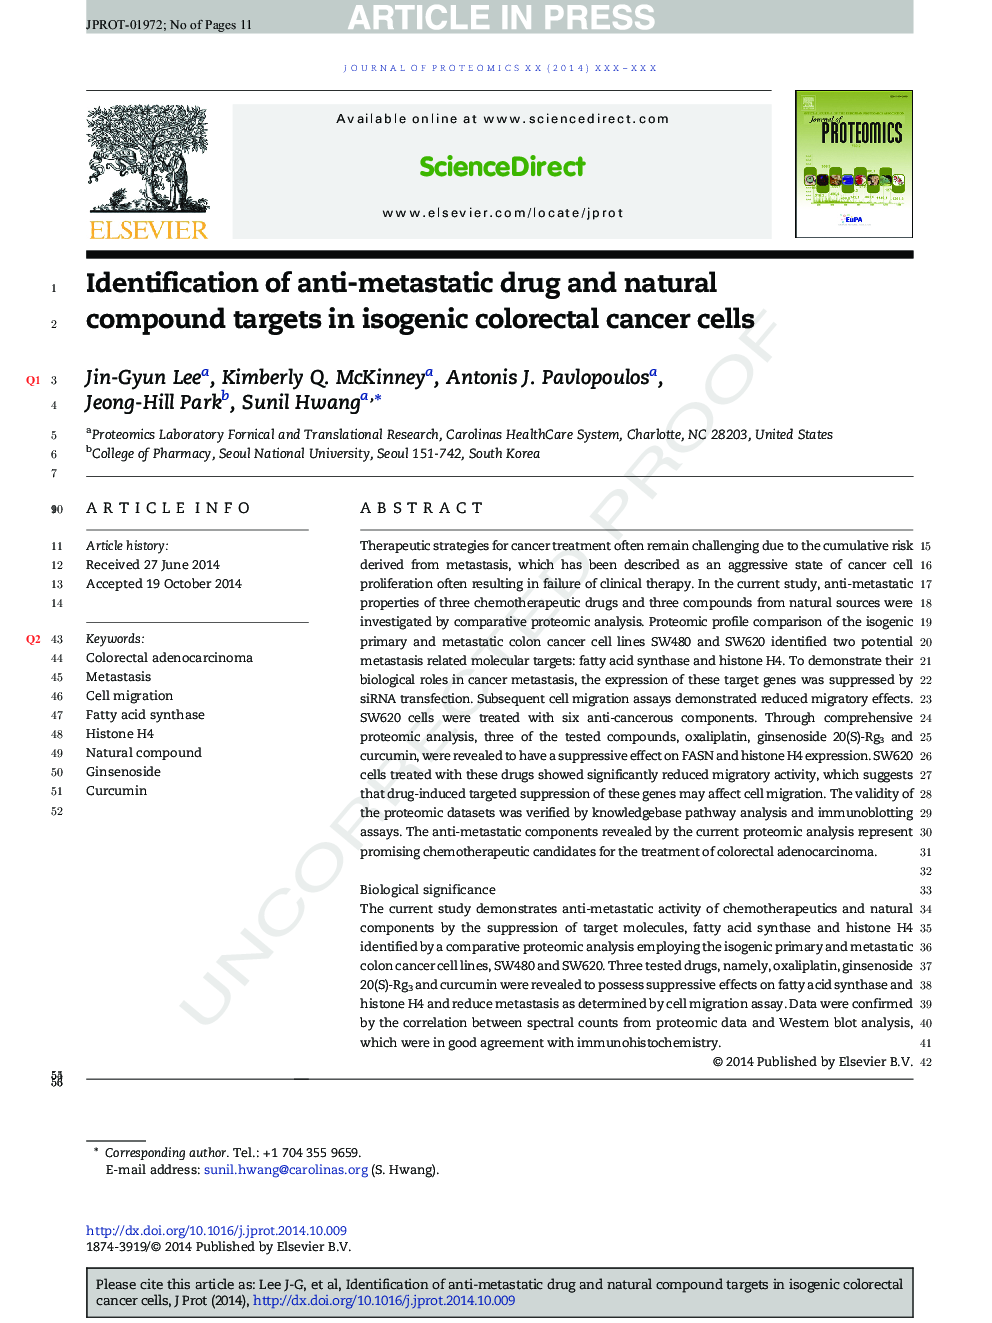 شناسایی داروهای ضد متاستاز و اهداف ترکیبات طبیعی در سلول های سرطانی کولورکتال ایزوژنیک 